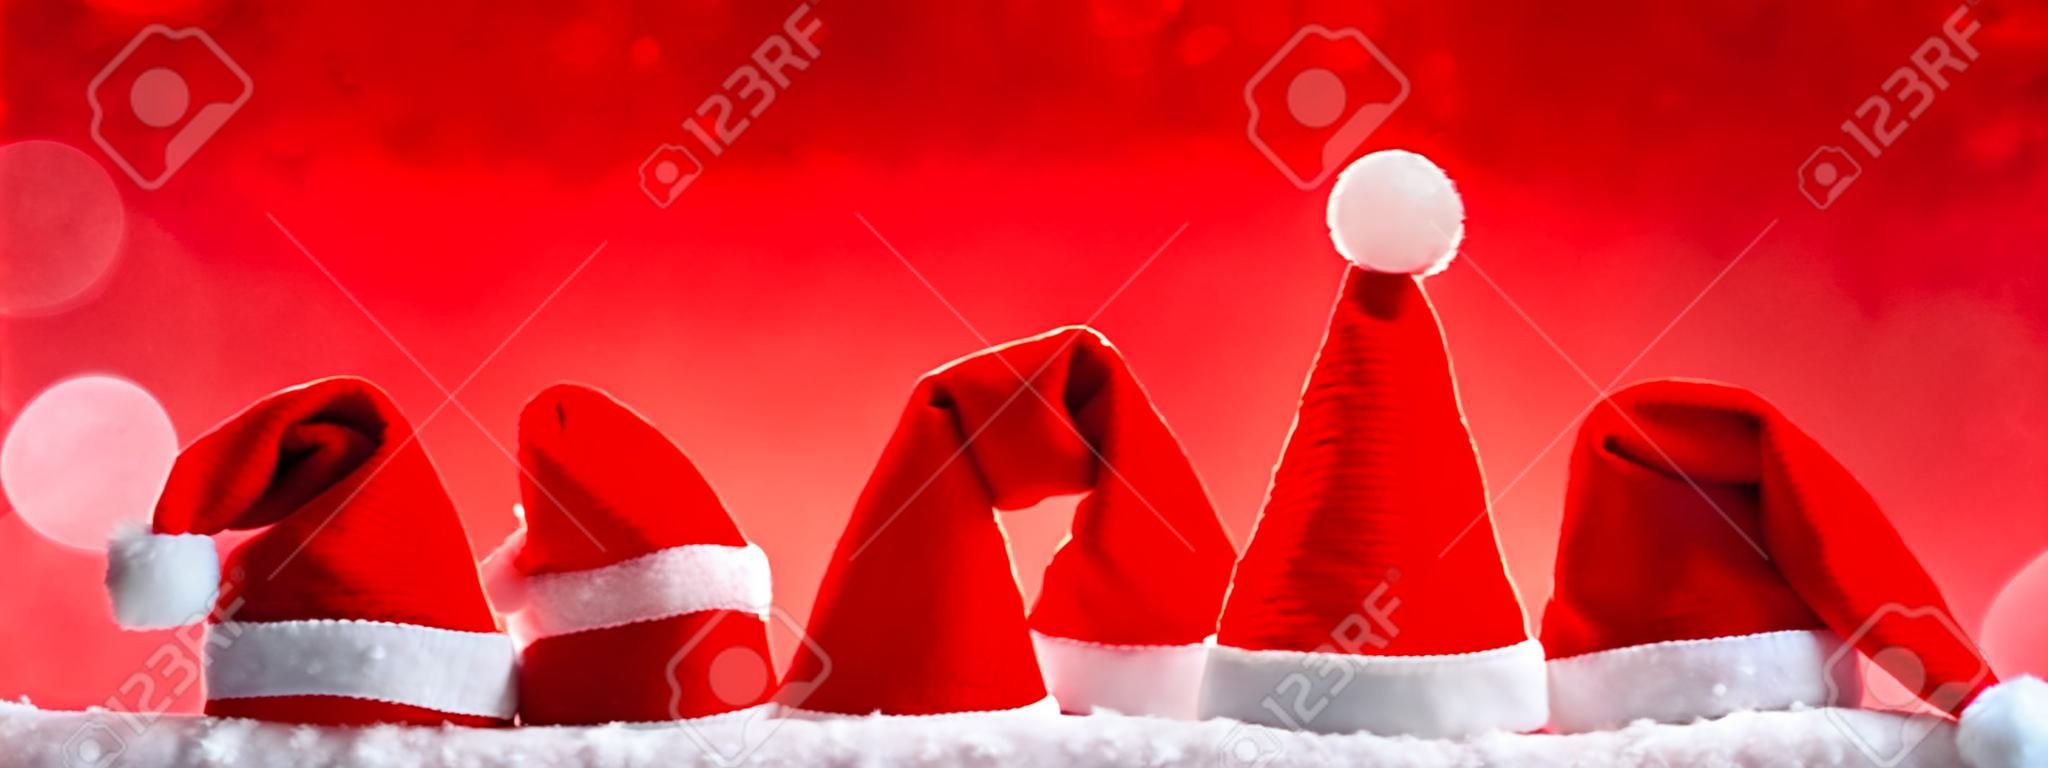 Siedem czerwonym kapelusze Santa samodzielnie na czerwonym background.Christmas czerwonym tle z Christmas hats.Red Christmas kapelusze.